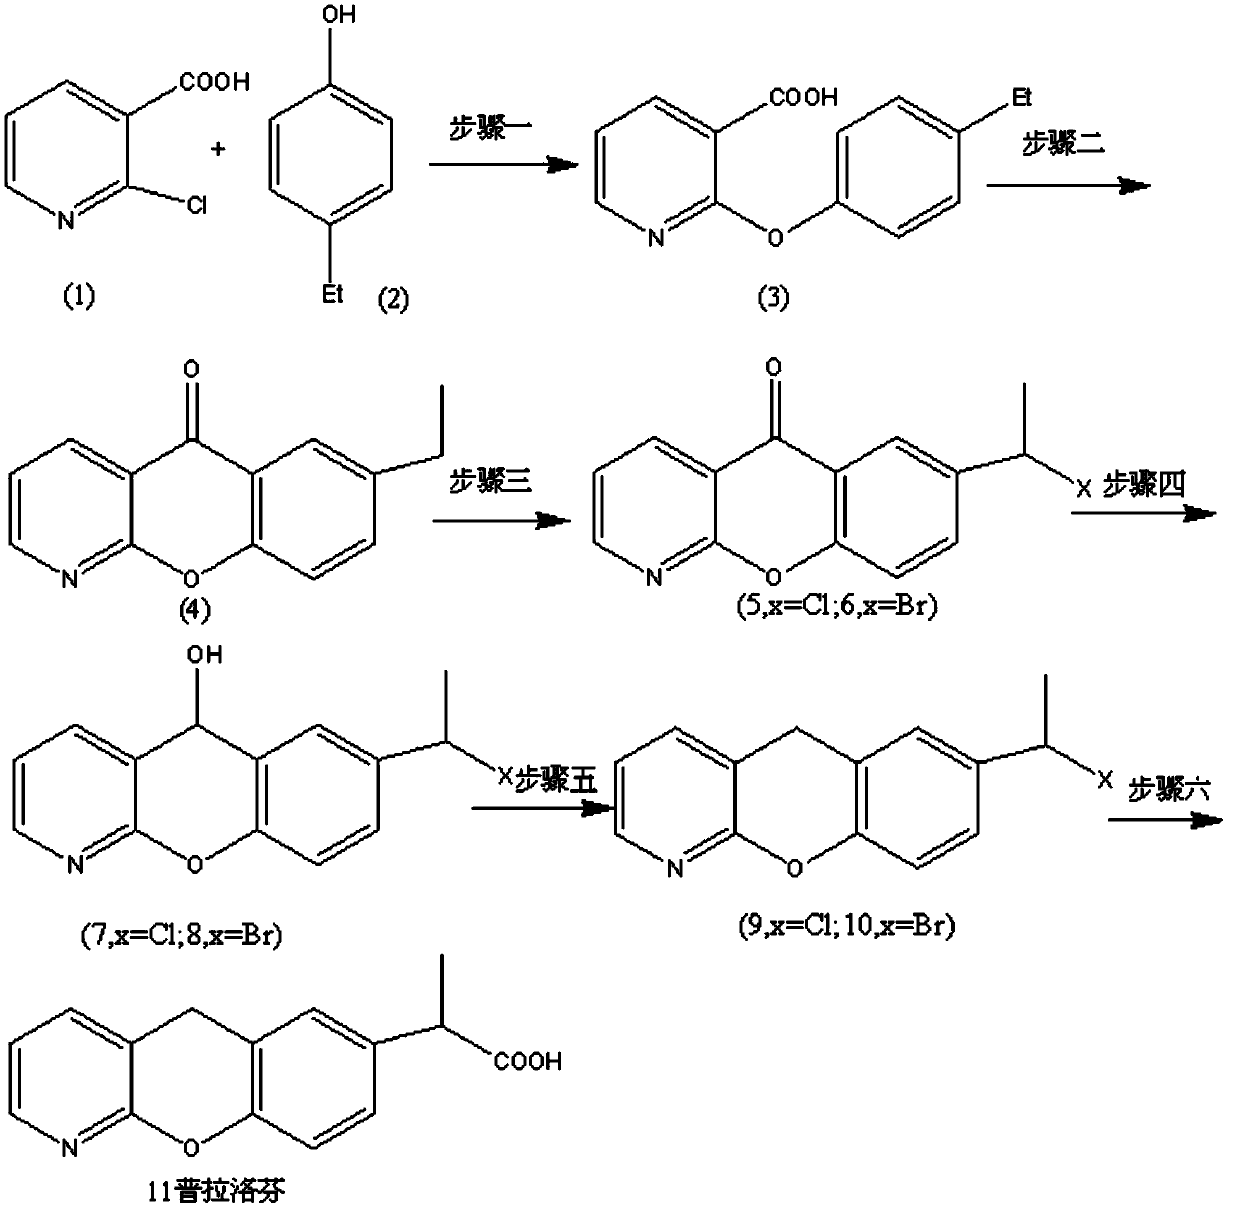 Synthetic method for pranoprofen